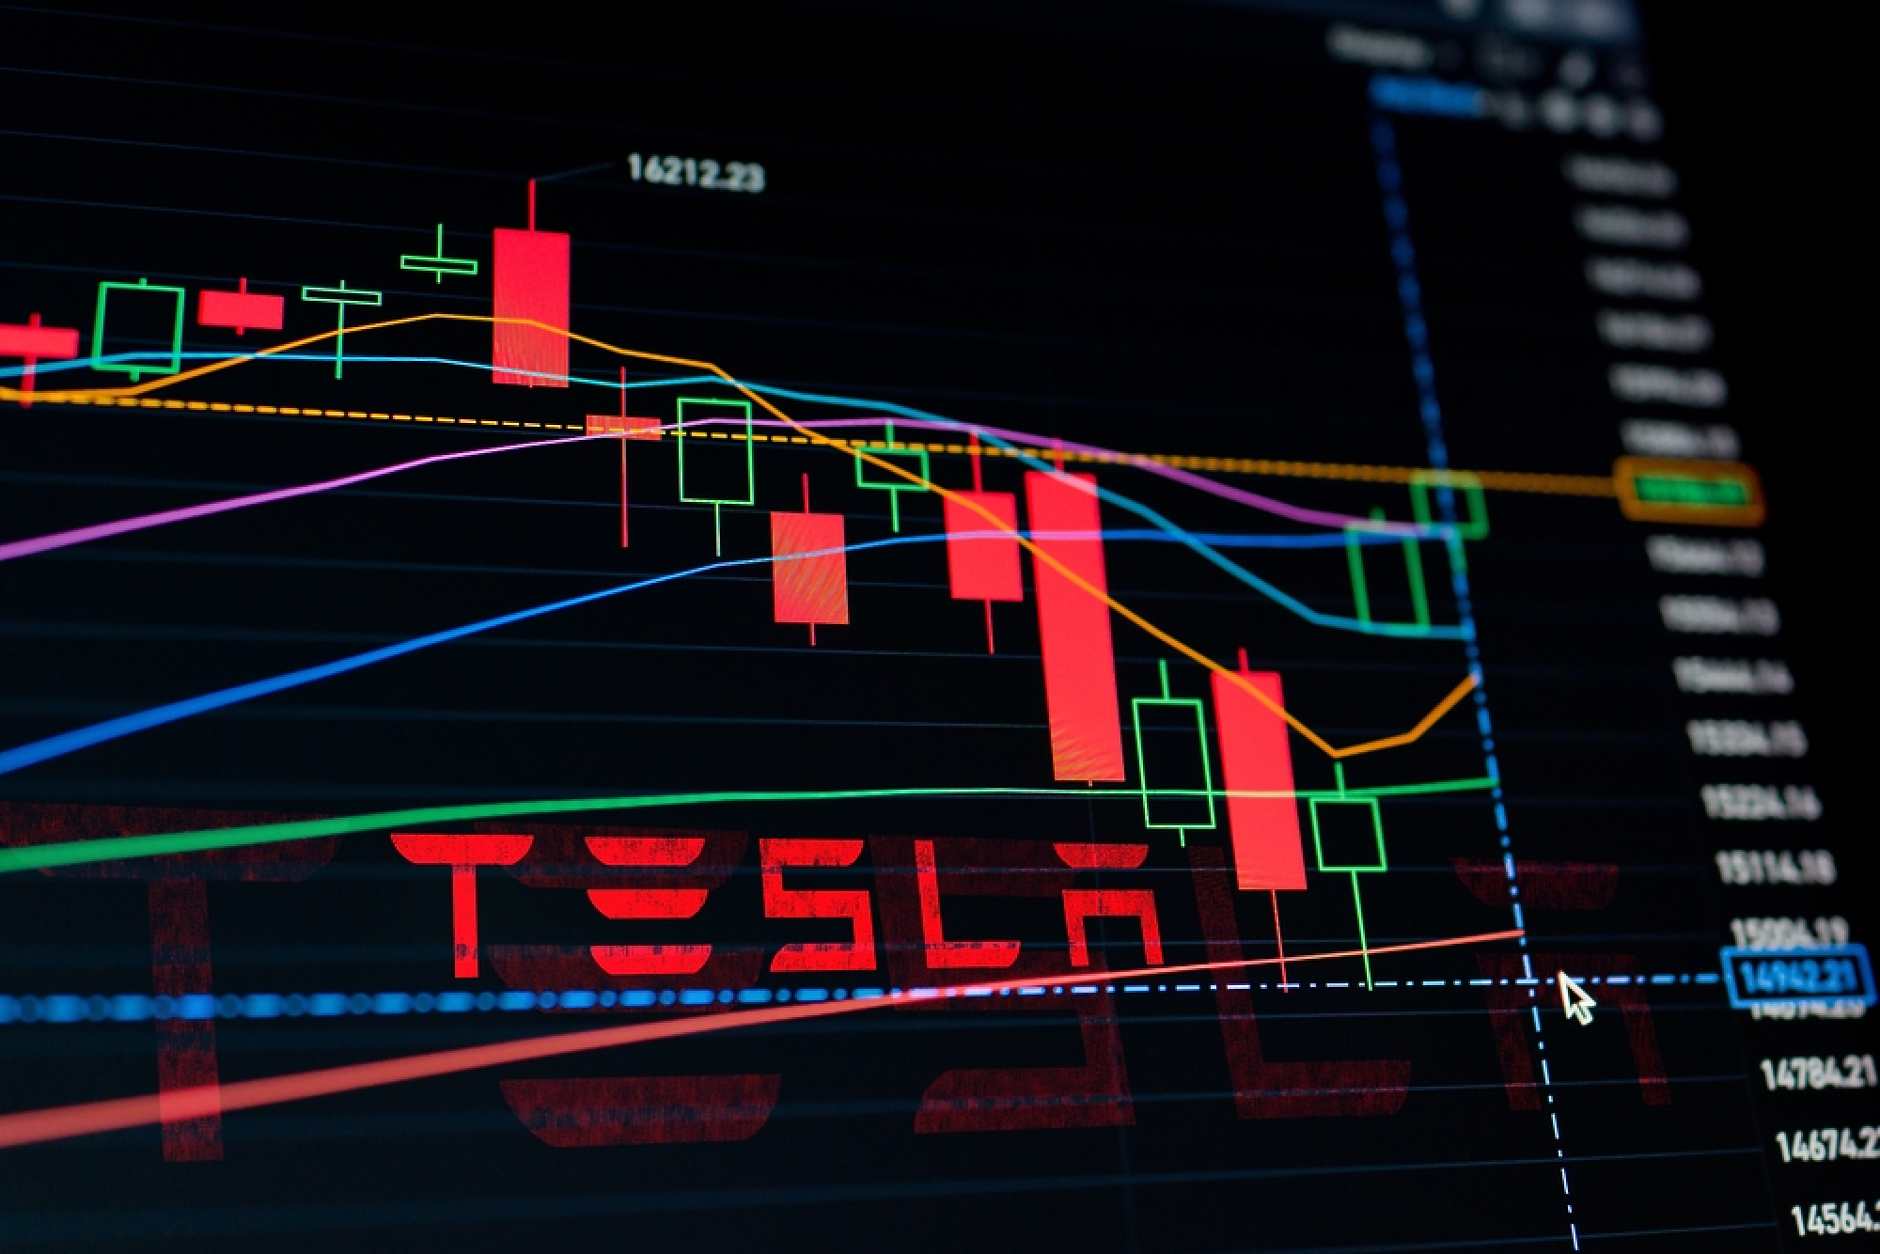 Датски пенсионни фондове продадоха акциите си в Tesla заради споровете й с профсъюзите